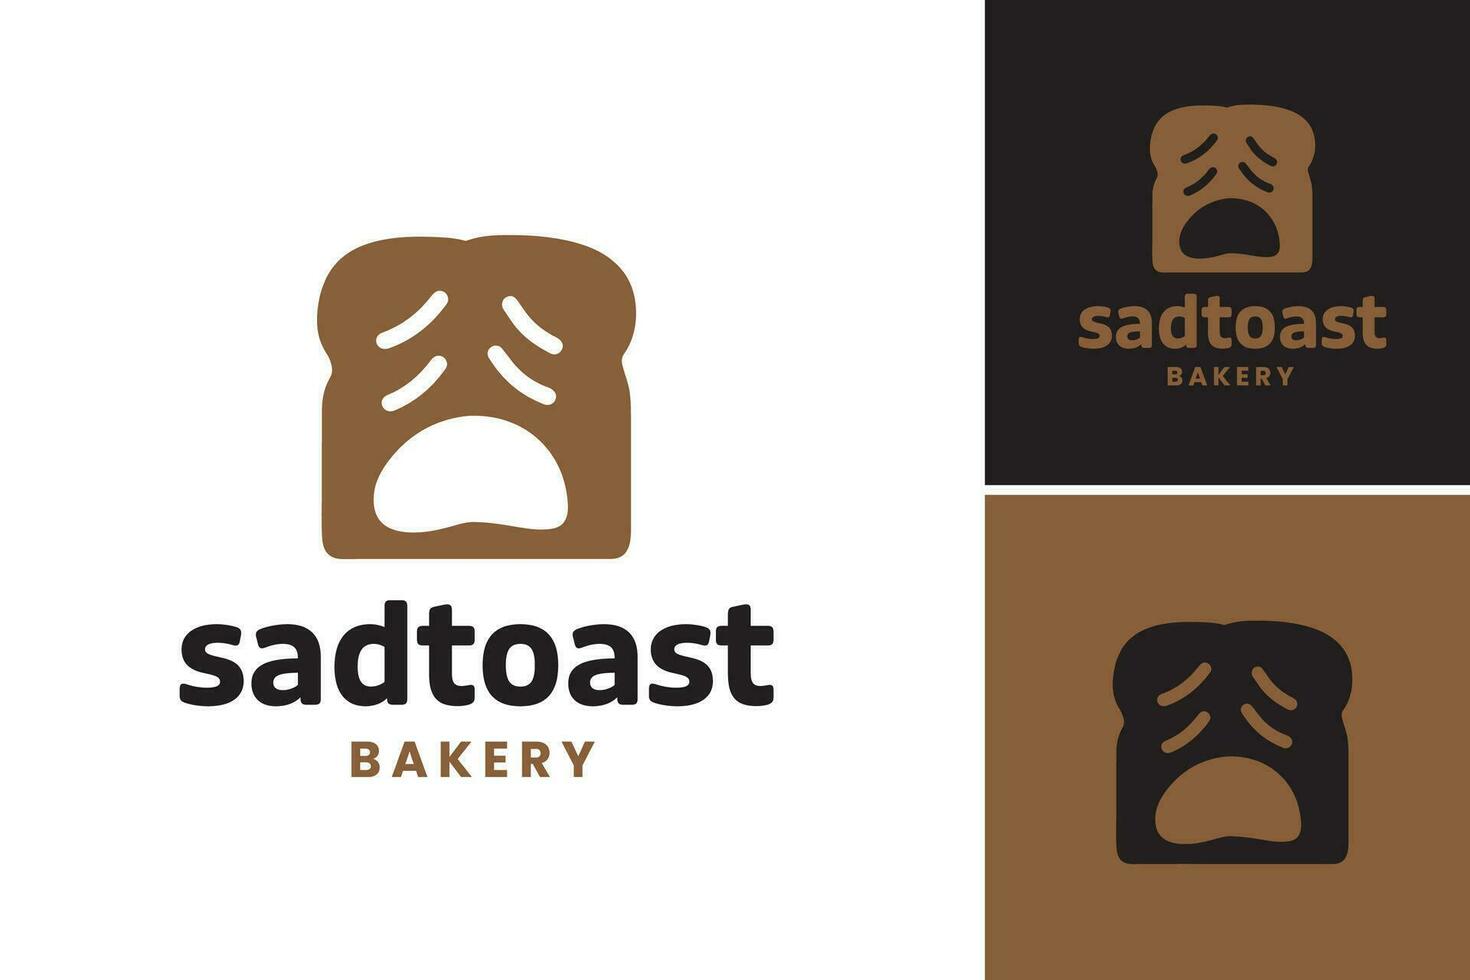 verdrietig geroosterd brood bakkerij logo is een ontwerp Bedrijfsmiddel geschikt voor een bakkerij of cafe dat wil naar overbrengen een eigenzinnig en uniek persoonlijkheid. het Kenmerken een verdrietig geroosterd brood karakter, toevoegen een tintje van eigenzinnigheid naar de merk. vector